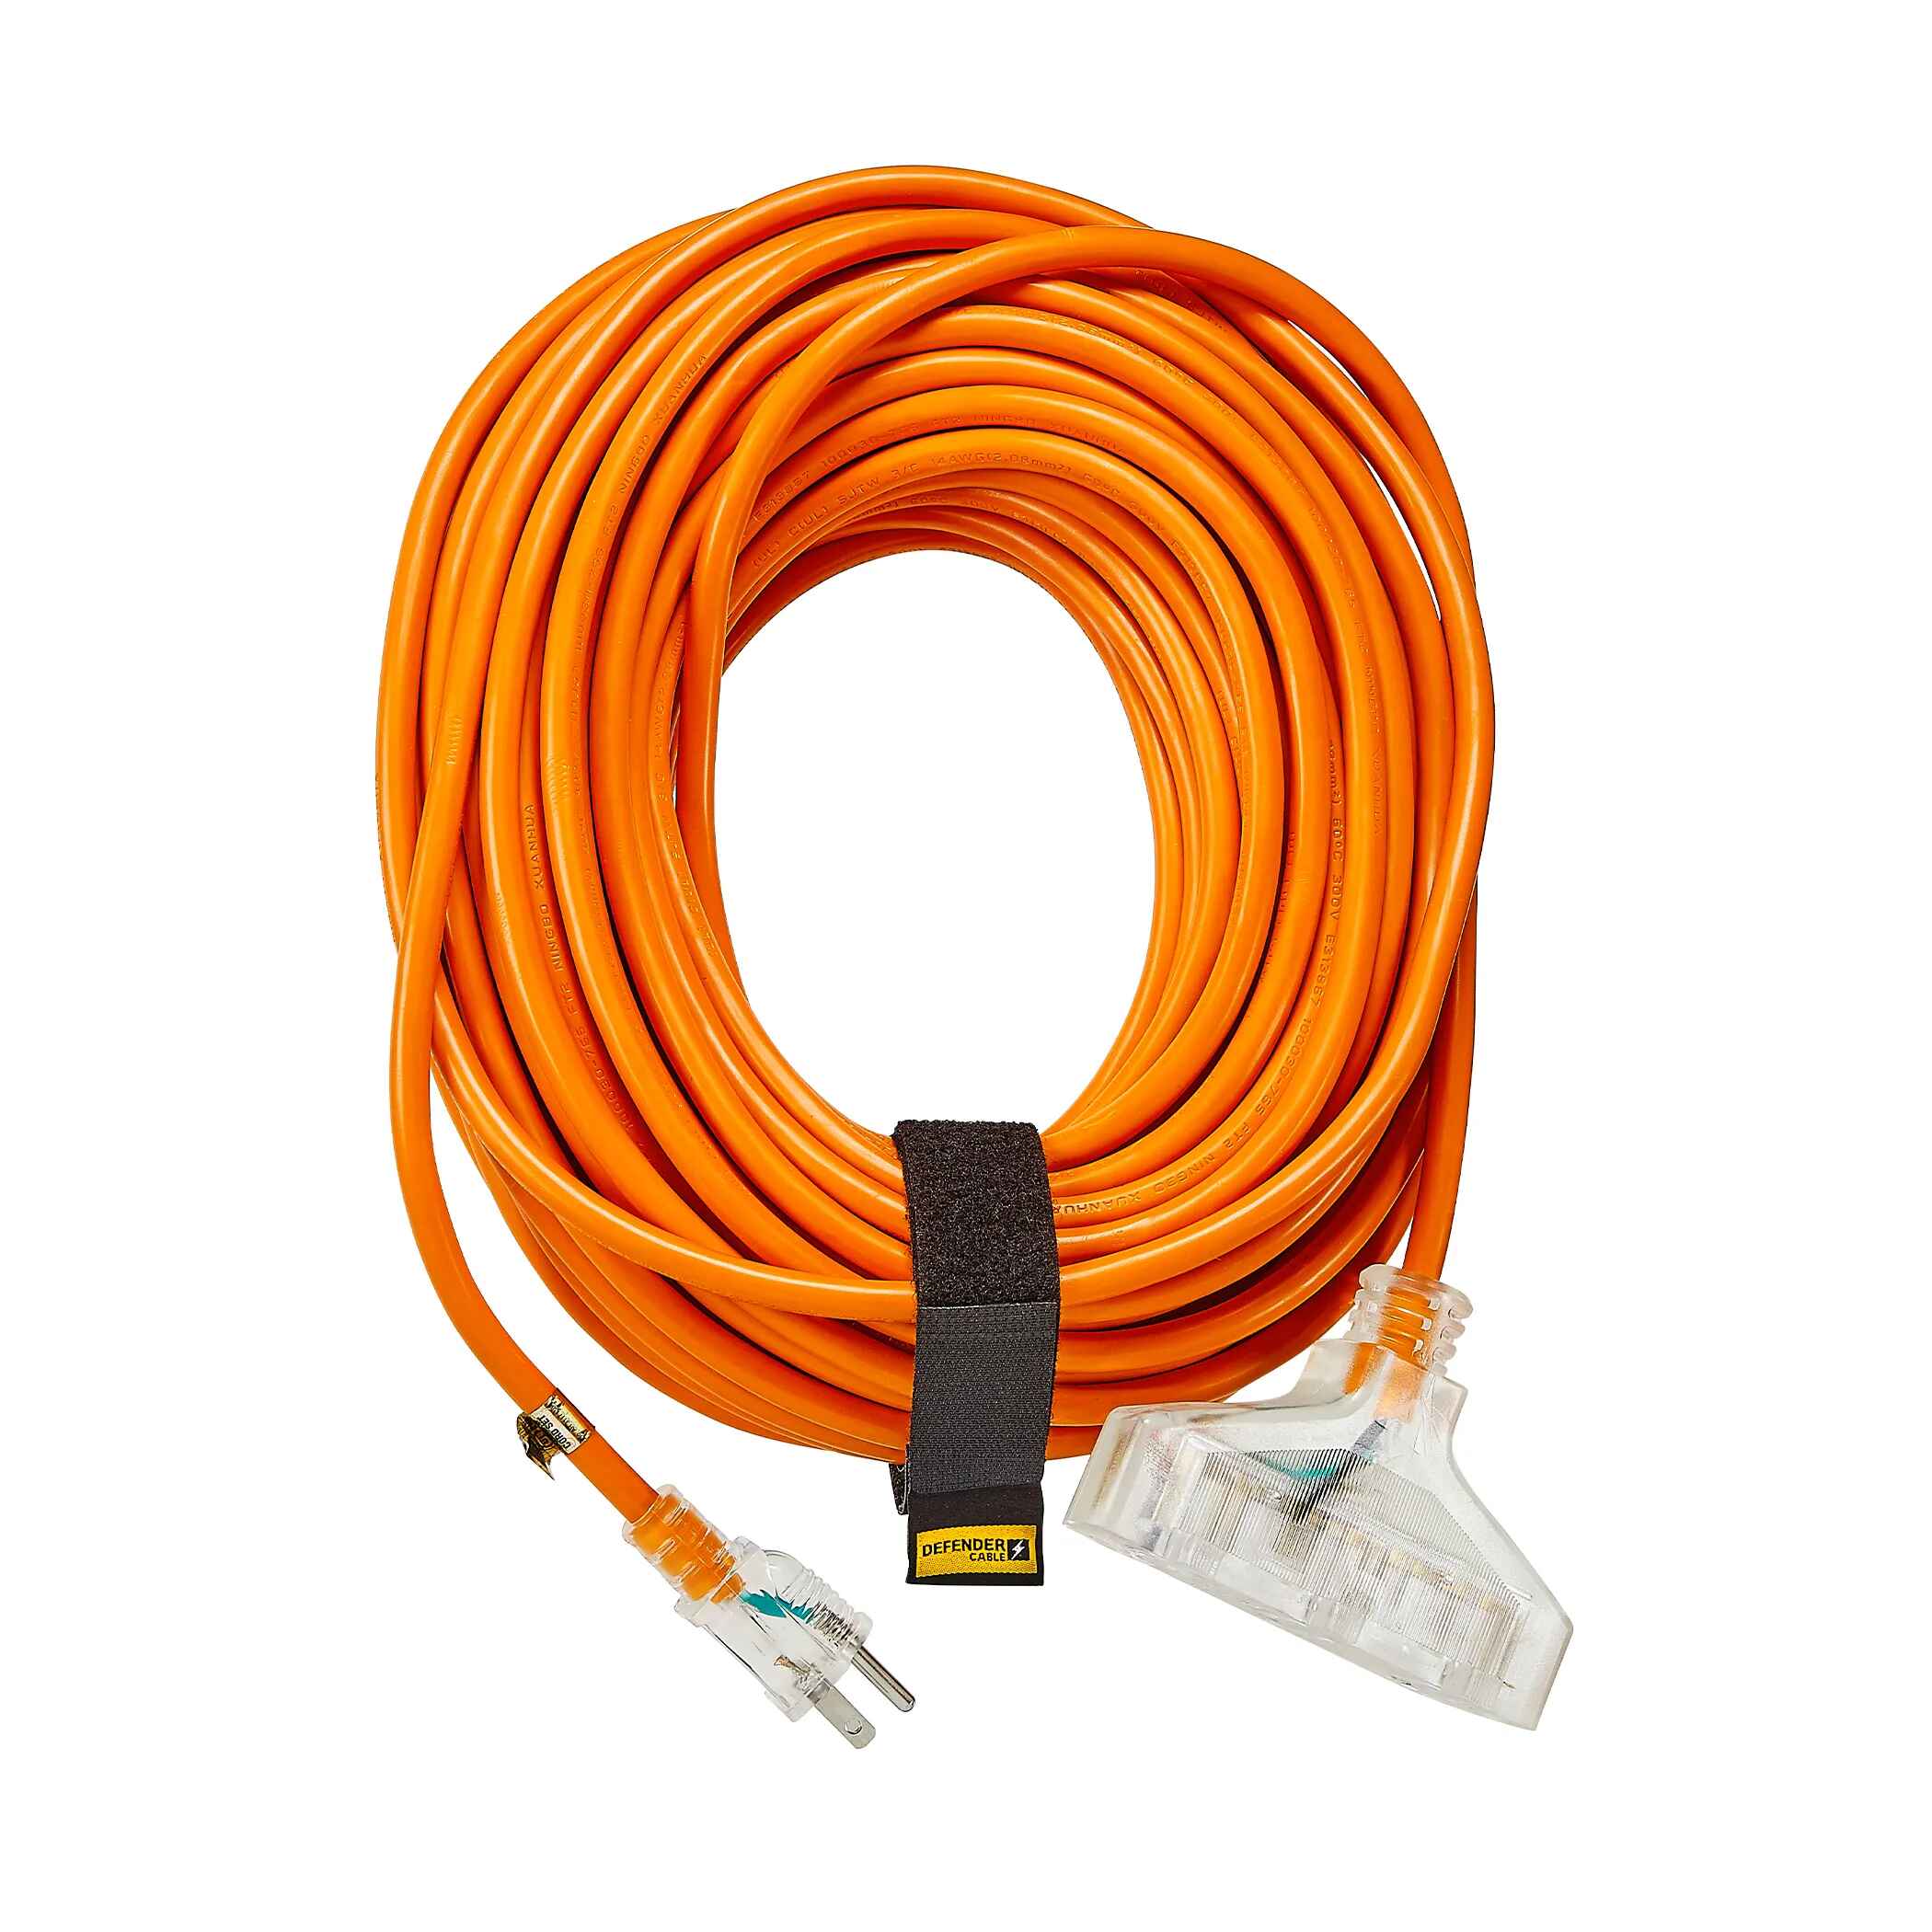 100 ft. x 12/3 Gauge Outdoor Extension Cord, Orange